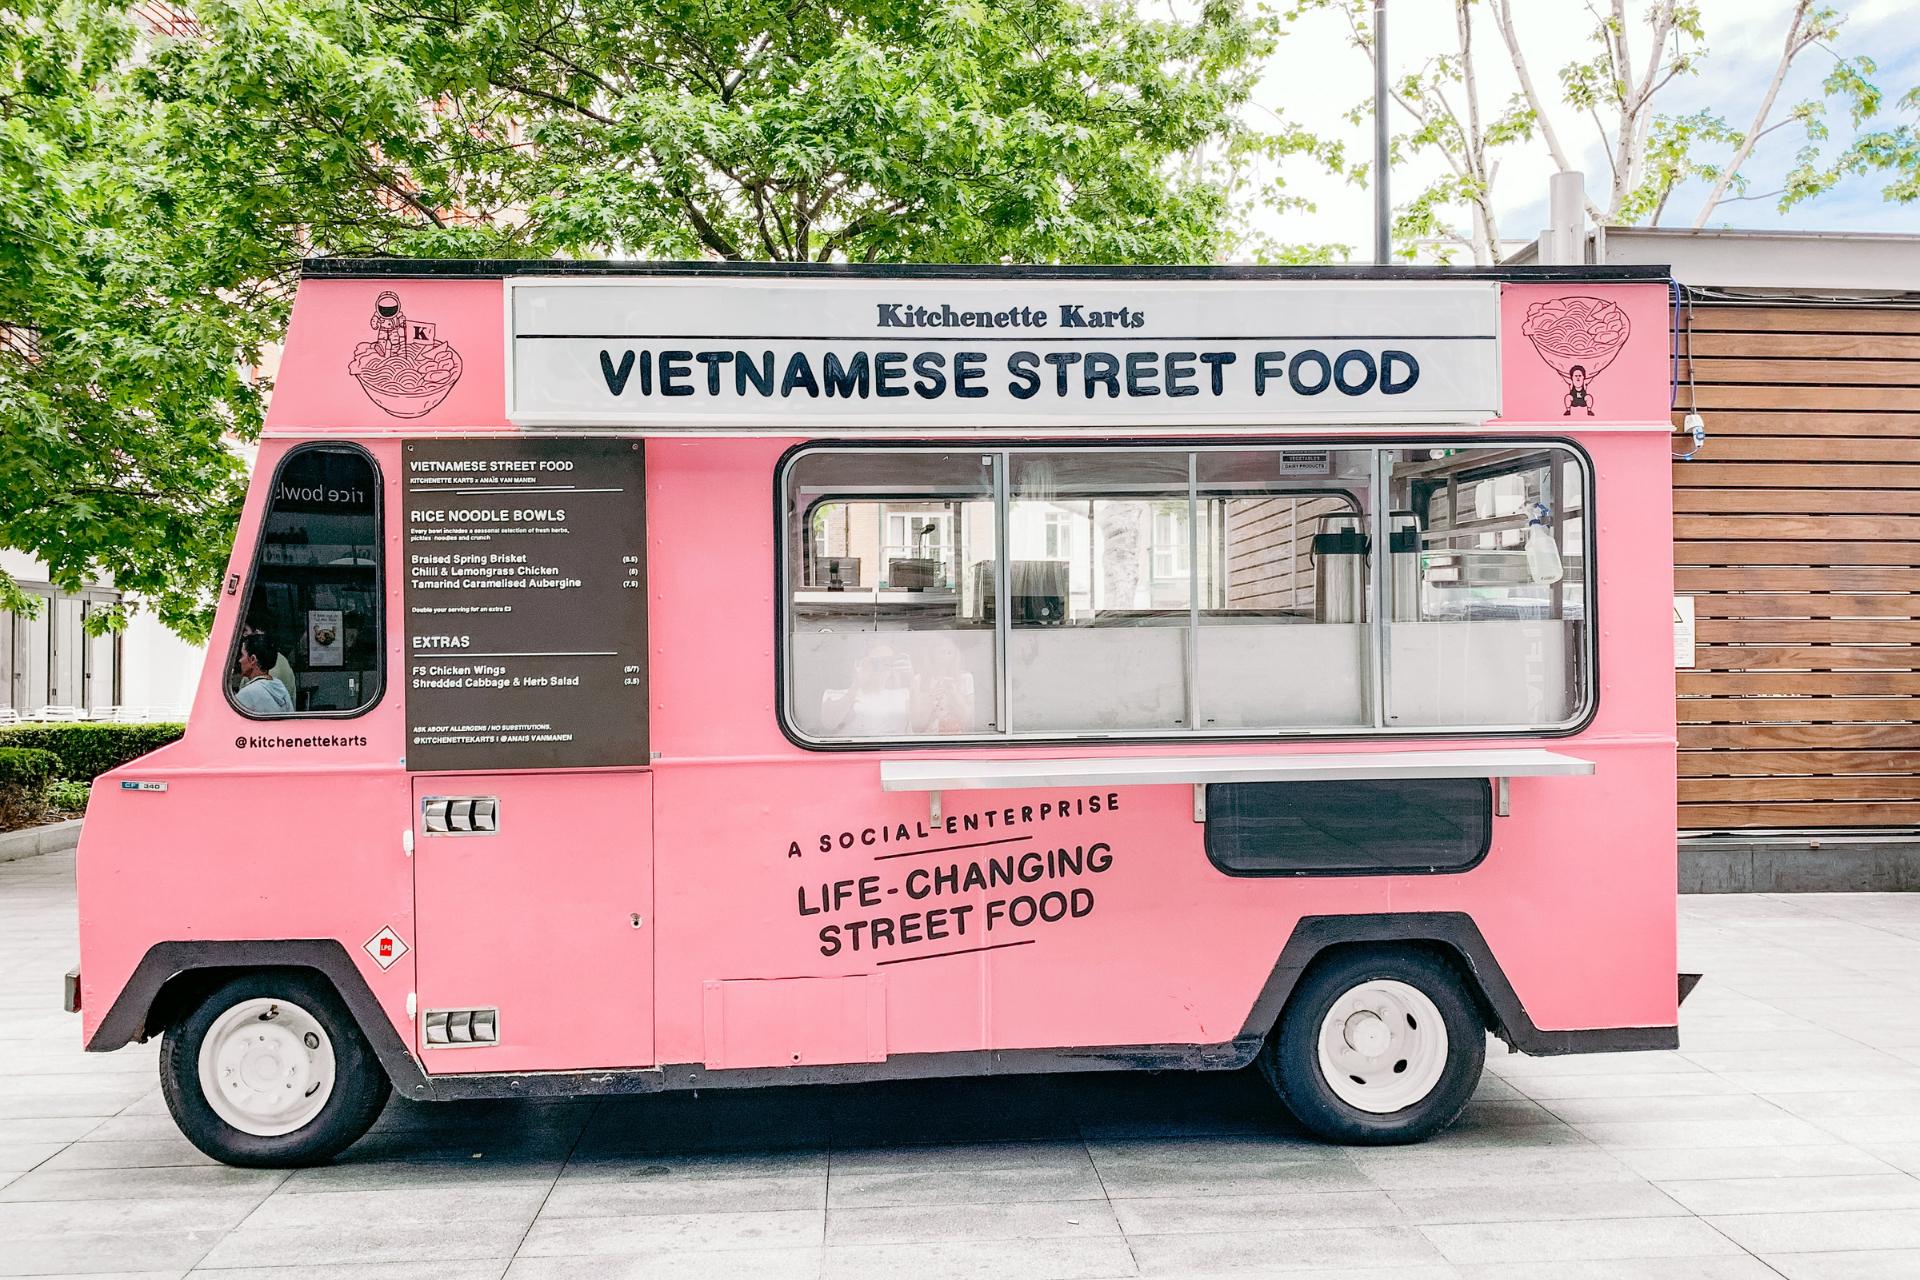 Vietnamesischer Street Food Food Truck geparkt